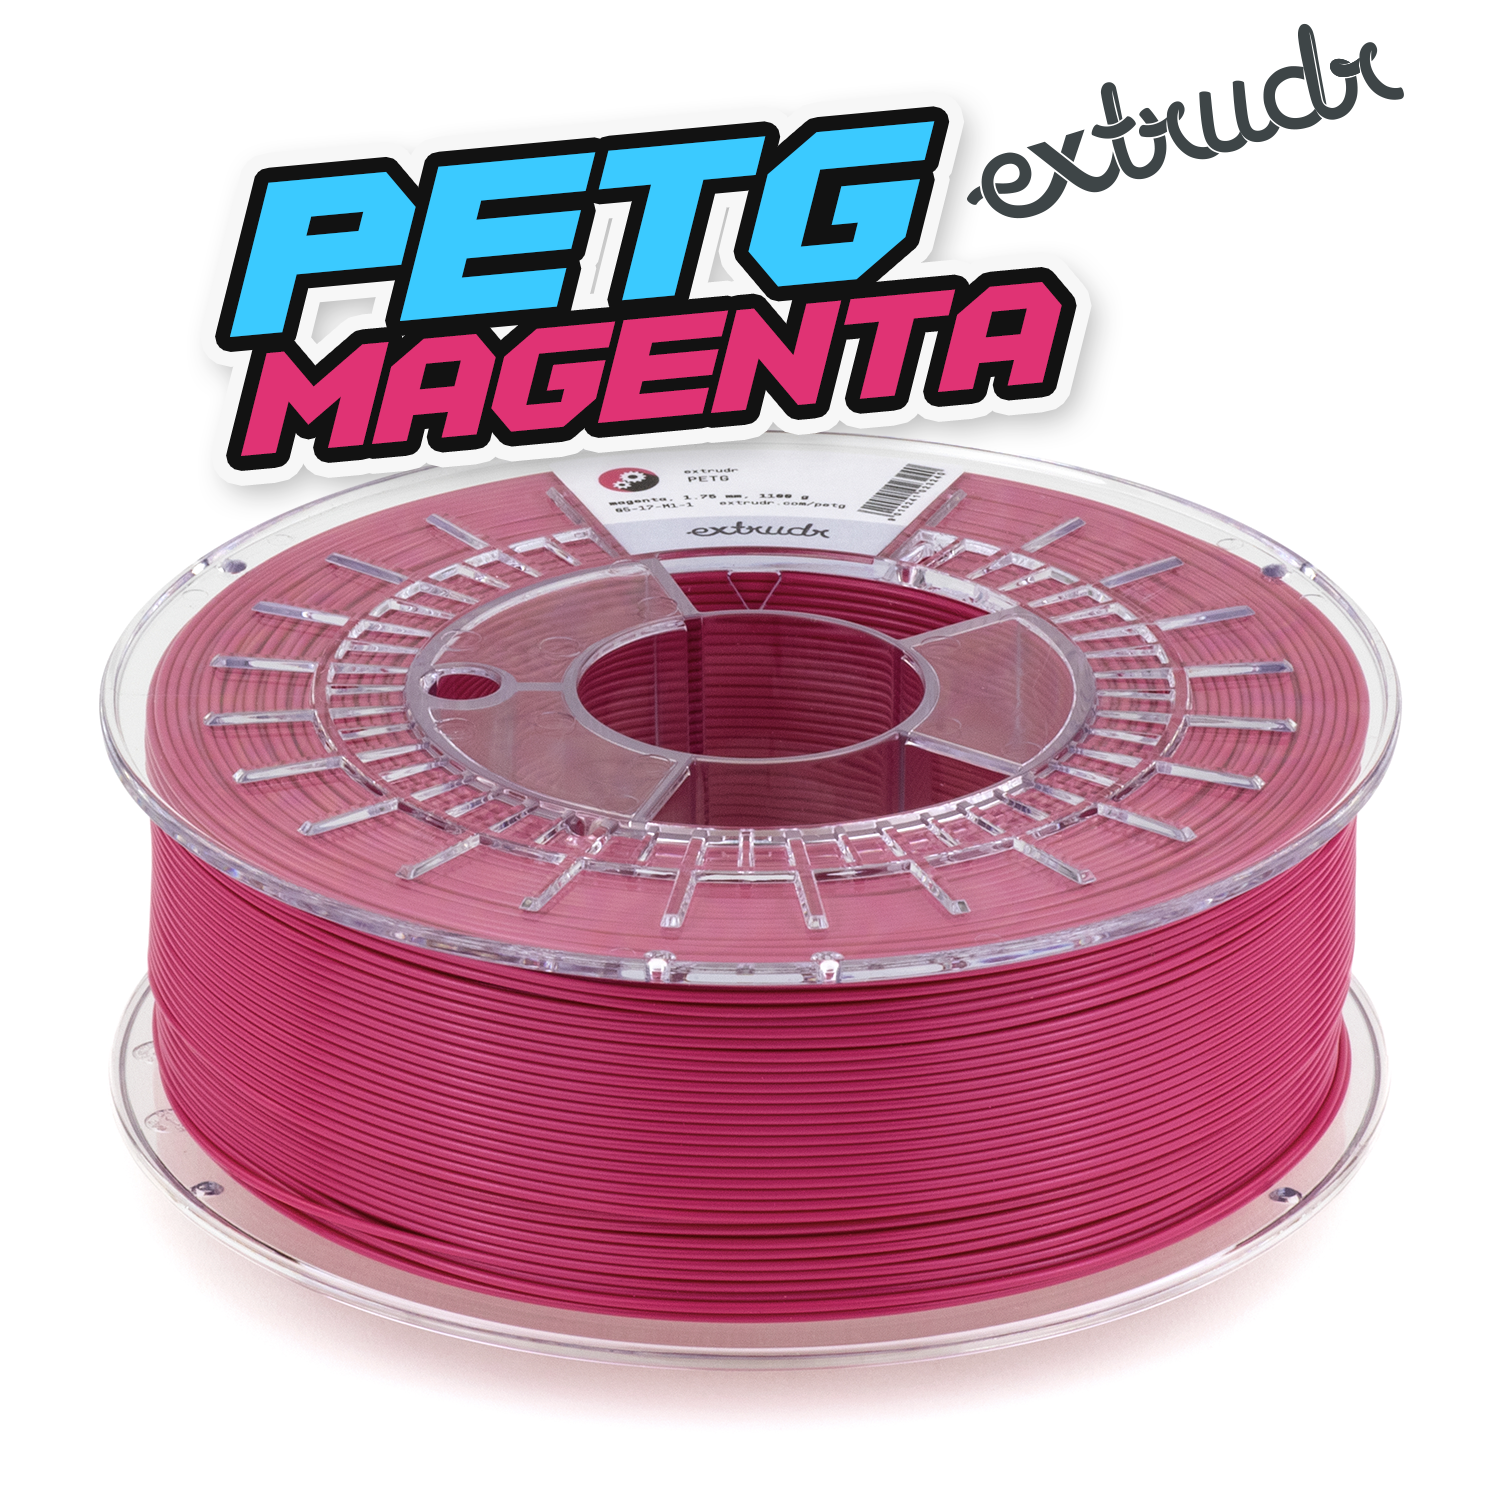 Extrudr PETG - Magenta [1.75mm] (35,45€/Kg)